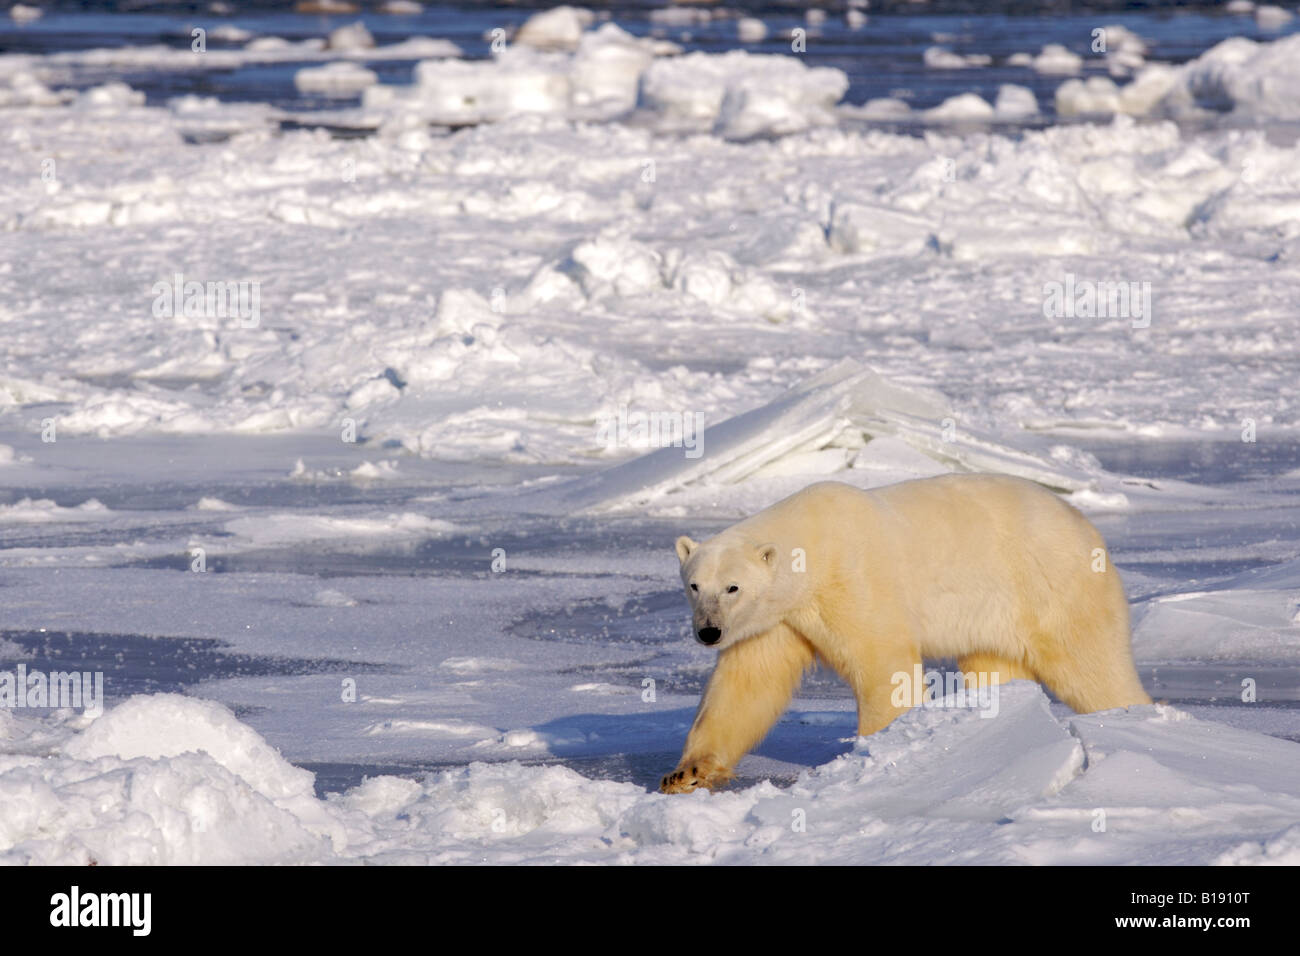 Orso polare, Ursus maritimus, sulle frange ghiacciate della Baia di Hudson, Churchill, Manitoba, Canada. Foto Stock